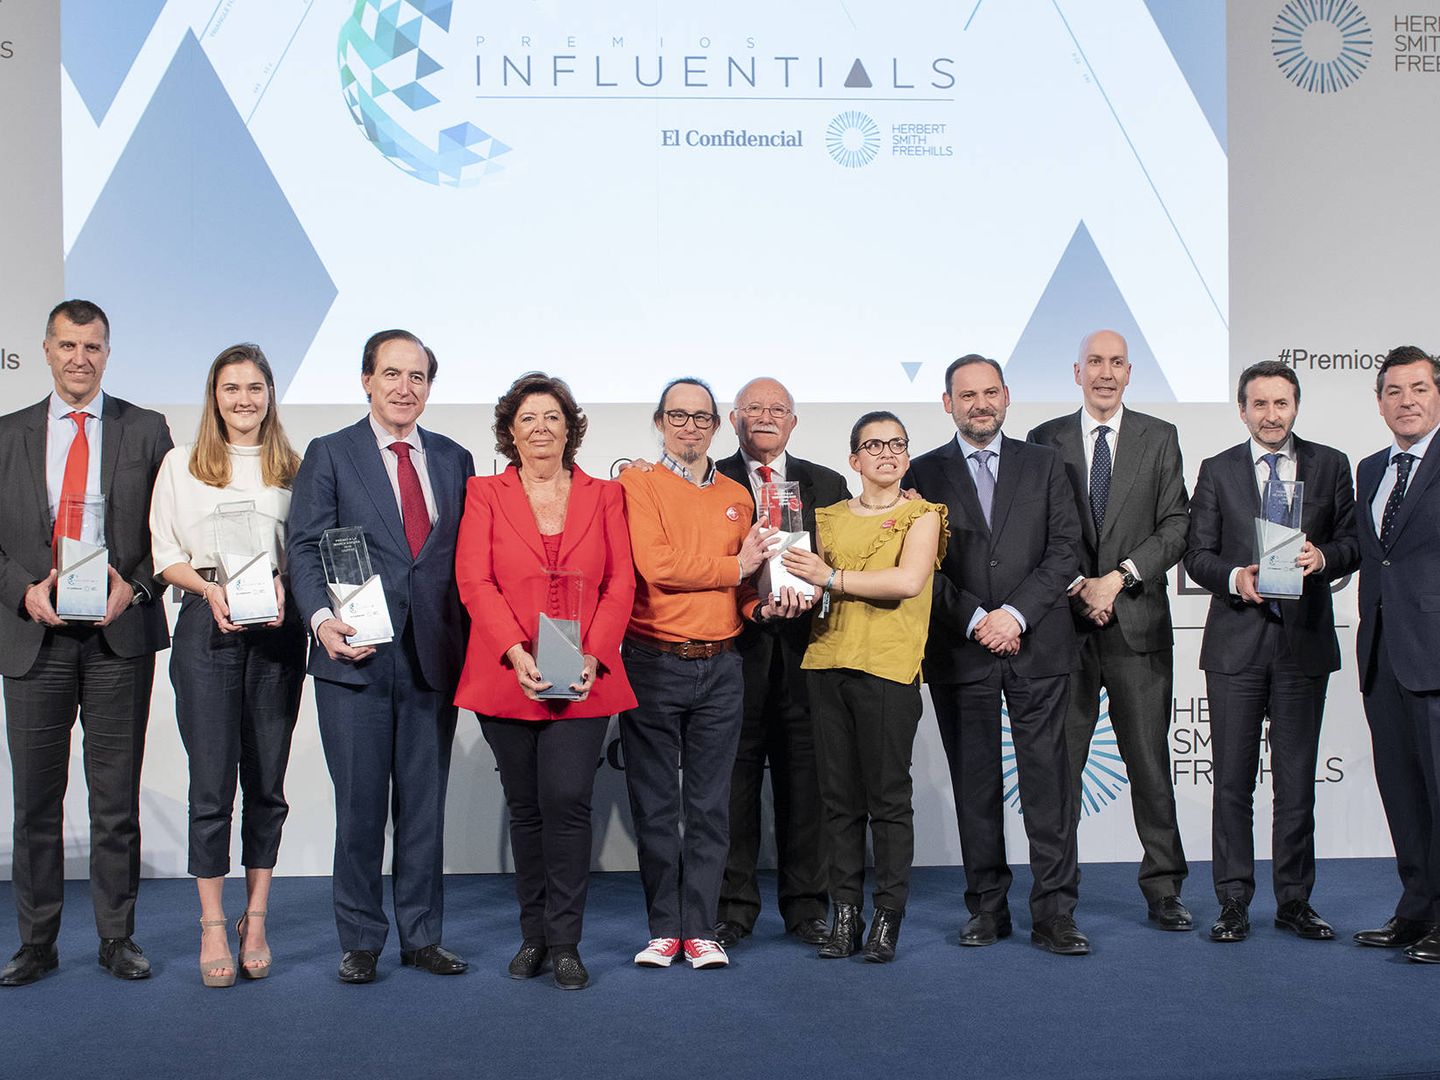 Foto de familia de los galardonados en los Premios Influentials 2019. (EC)